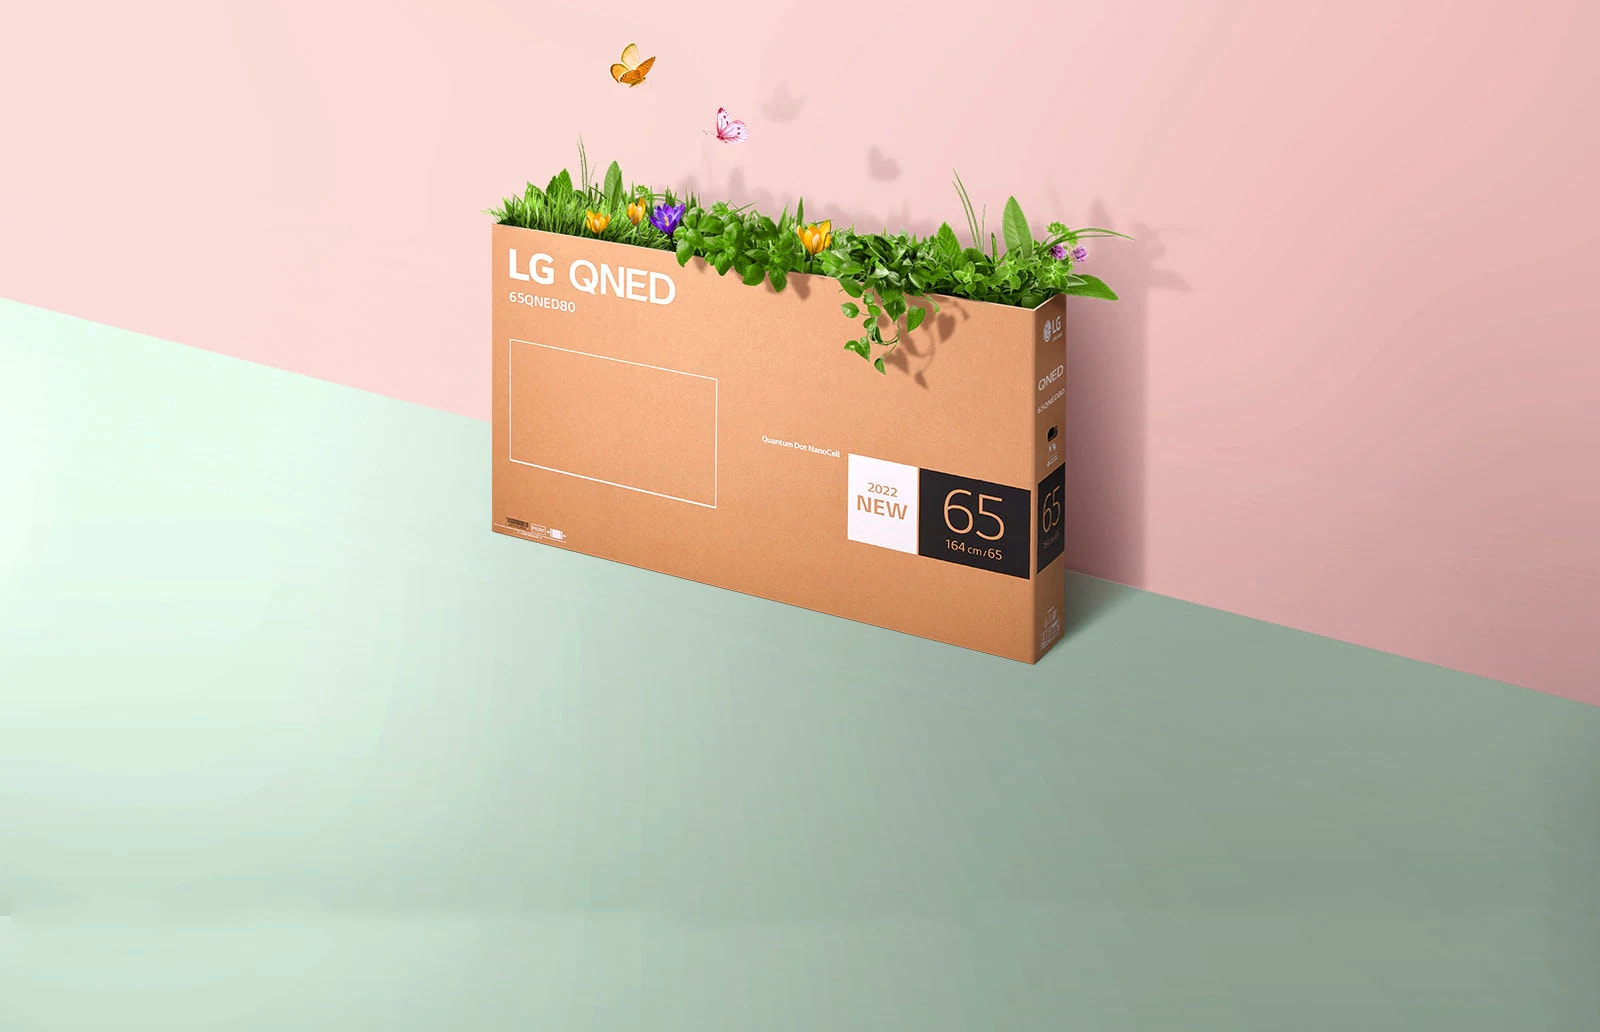 Упаковочная коробка QNED расположена на розовом и зеленом фоне, внутри нее растет трава и вылетают бабочки. 